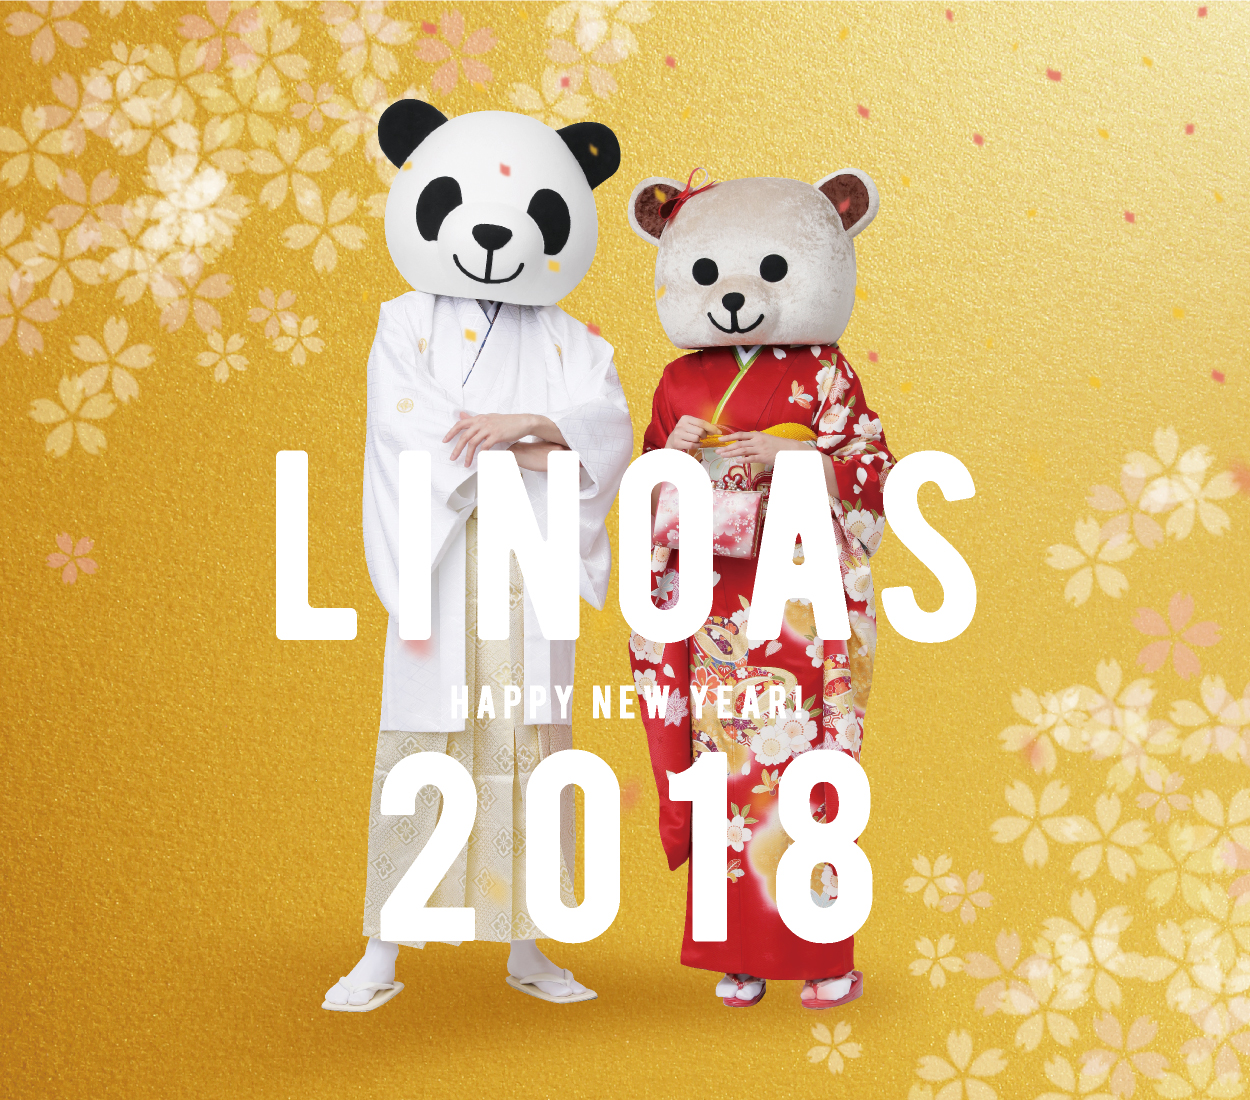 LINOAS HAPPY NEW YEAR 2018